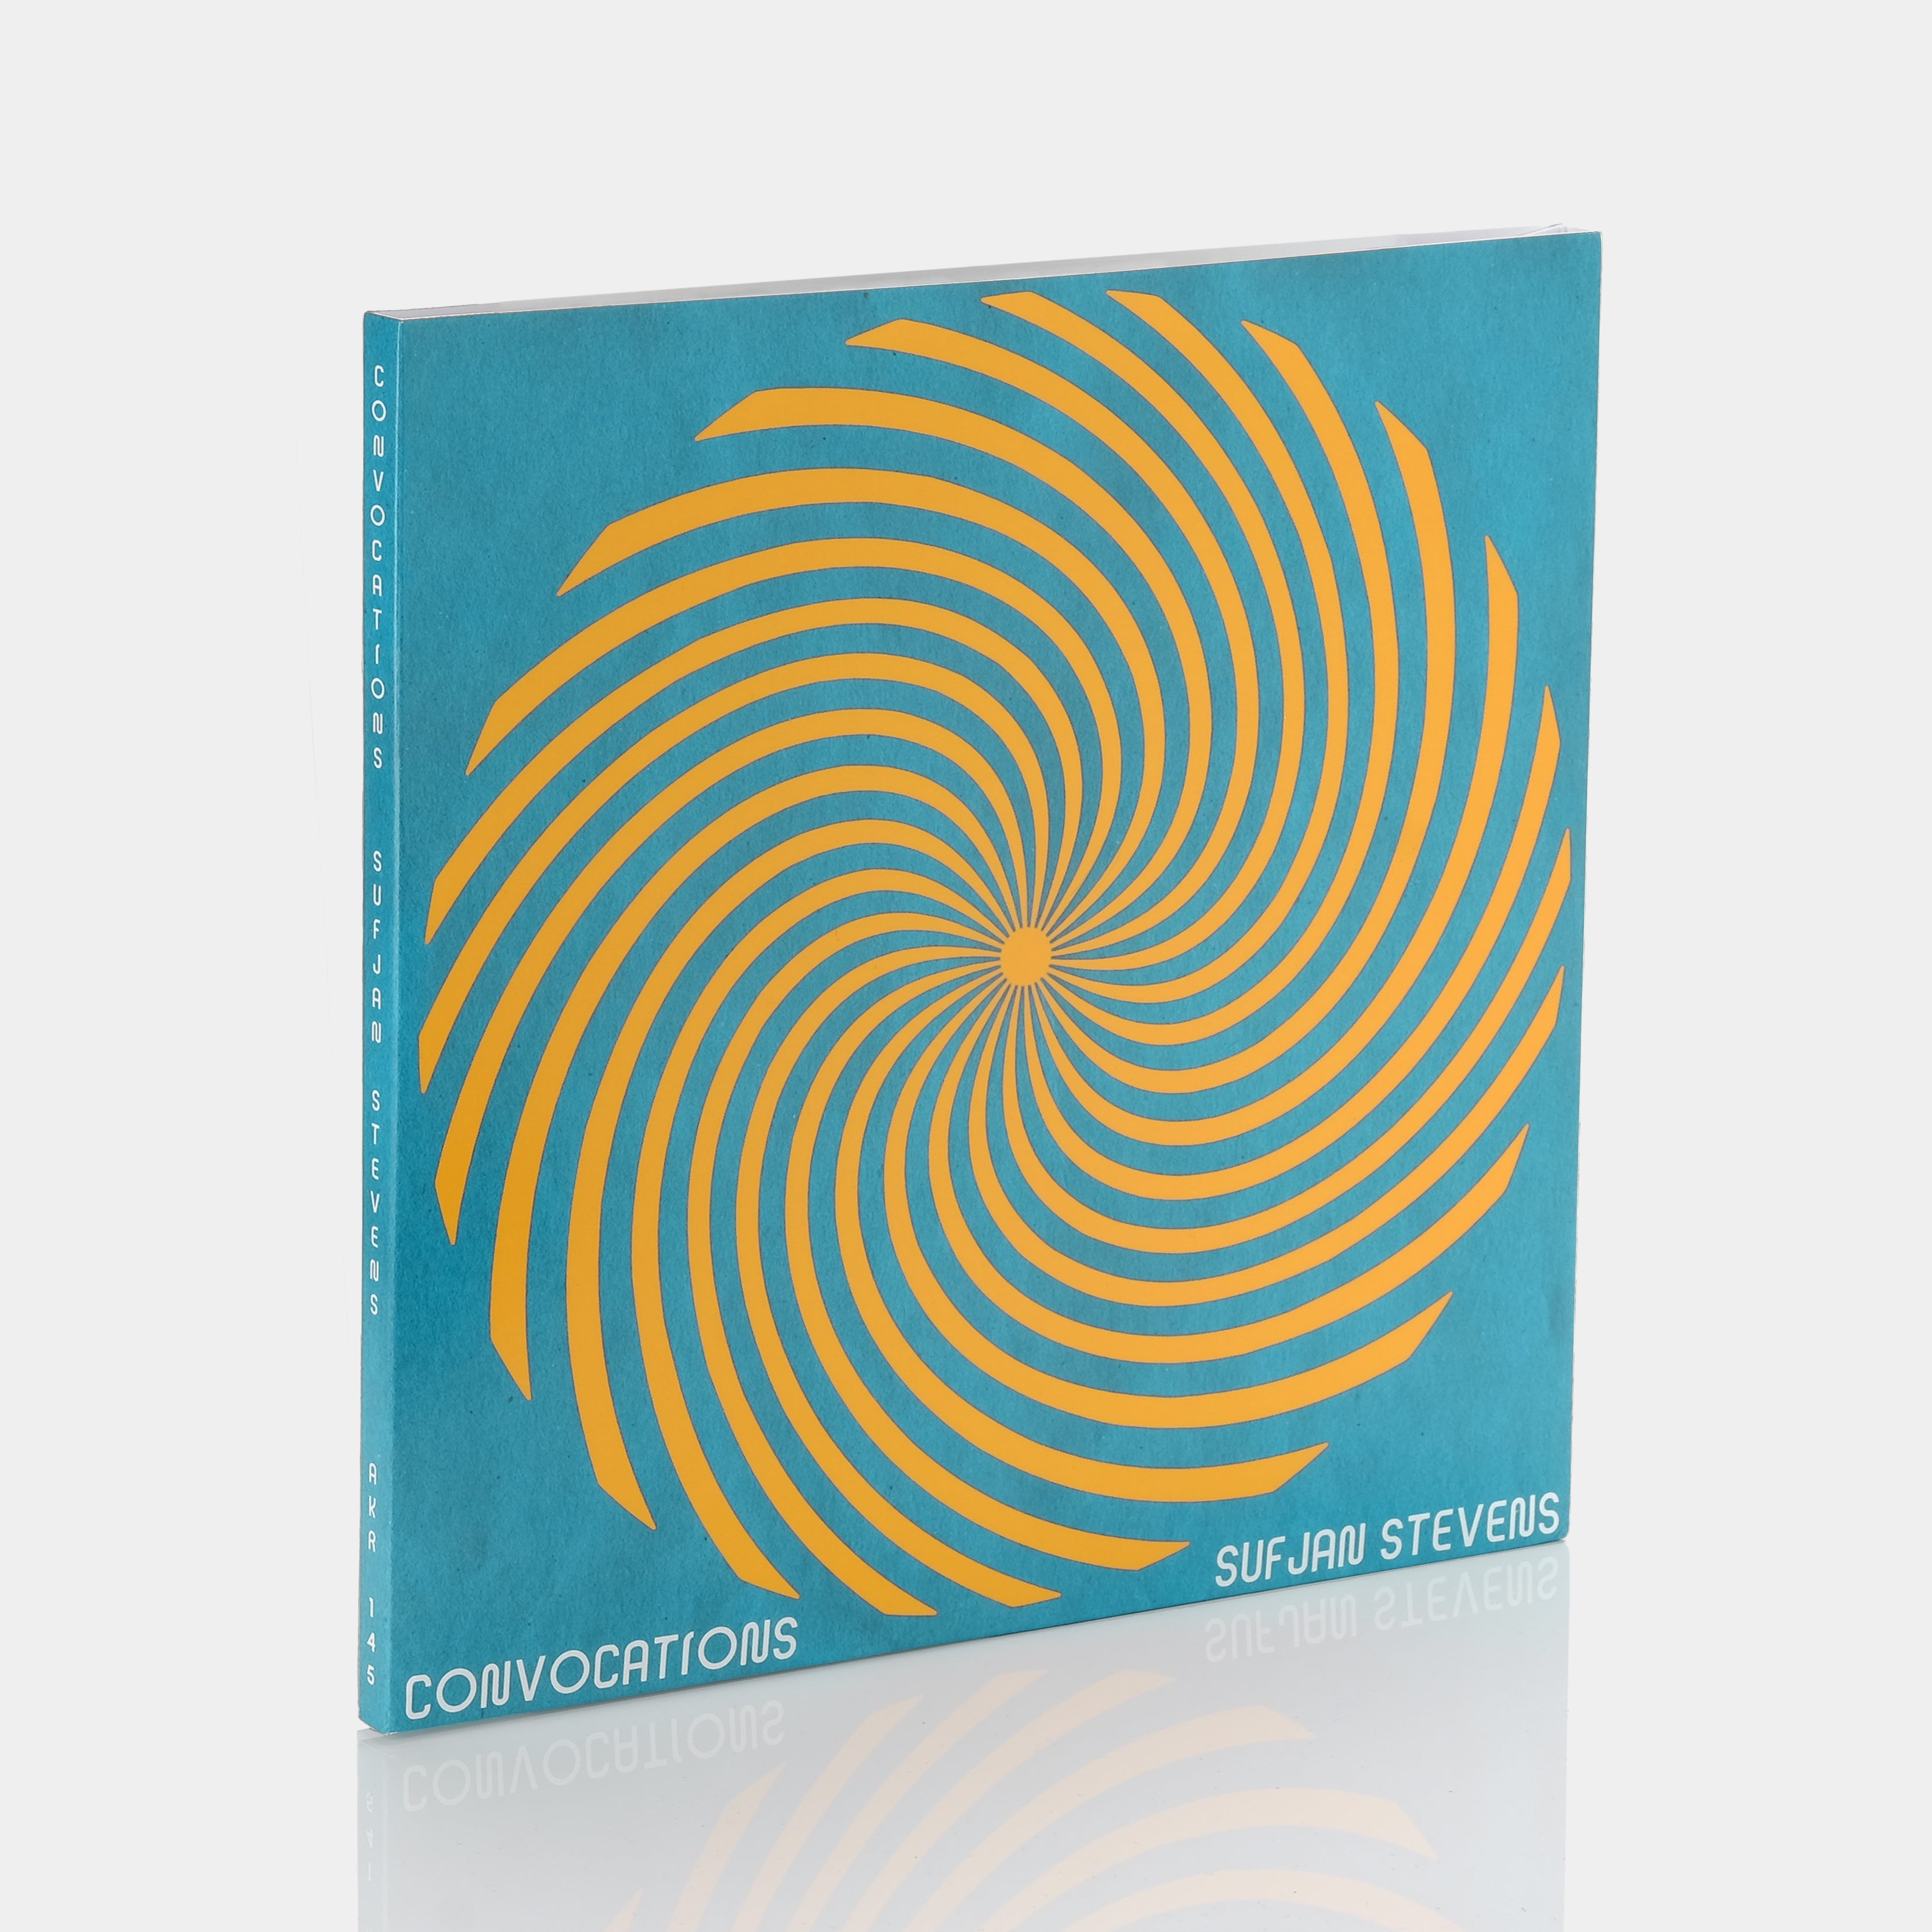 Sufjan Stevens - Convocations 5xLP Multicolored Vinyl Record